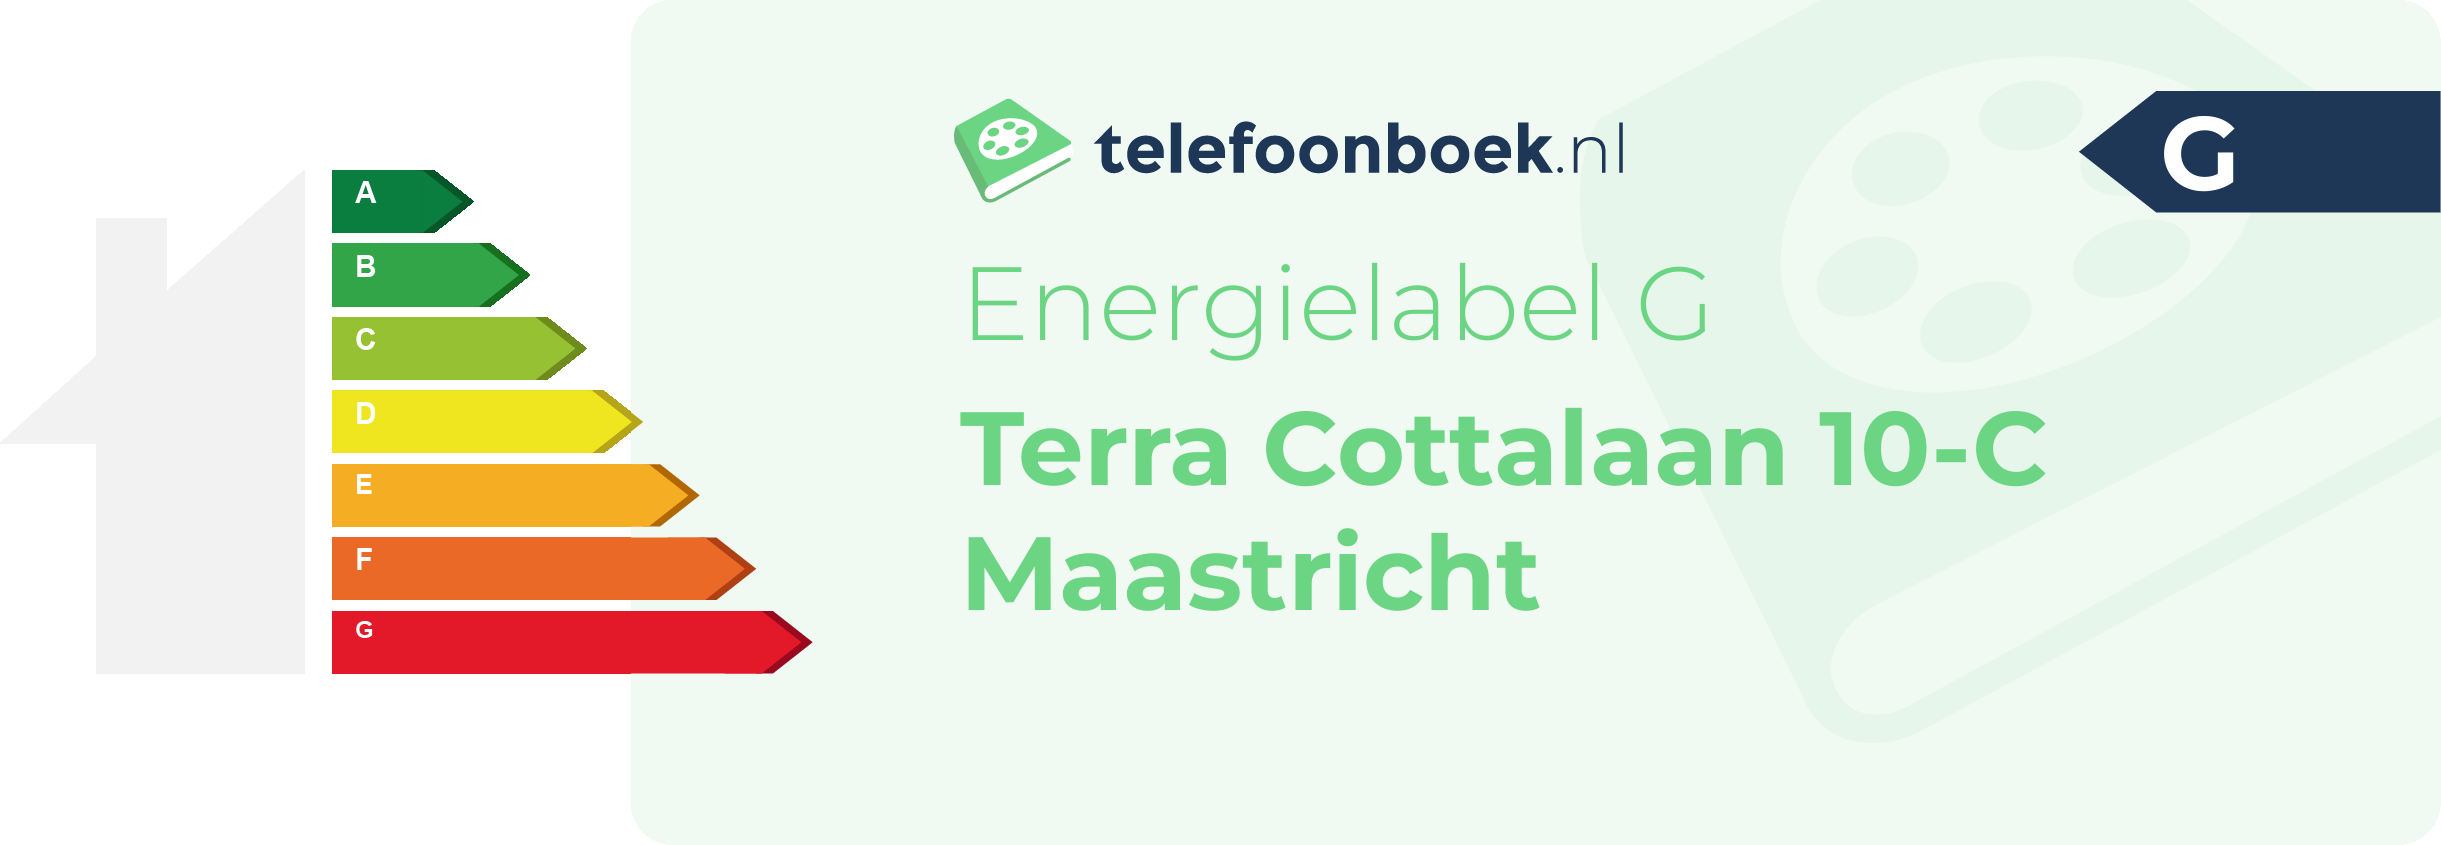 Energielabel Terra Cottalaan 10-C Maastricht